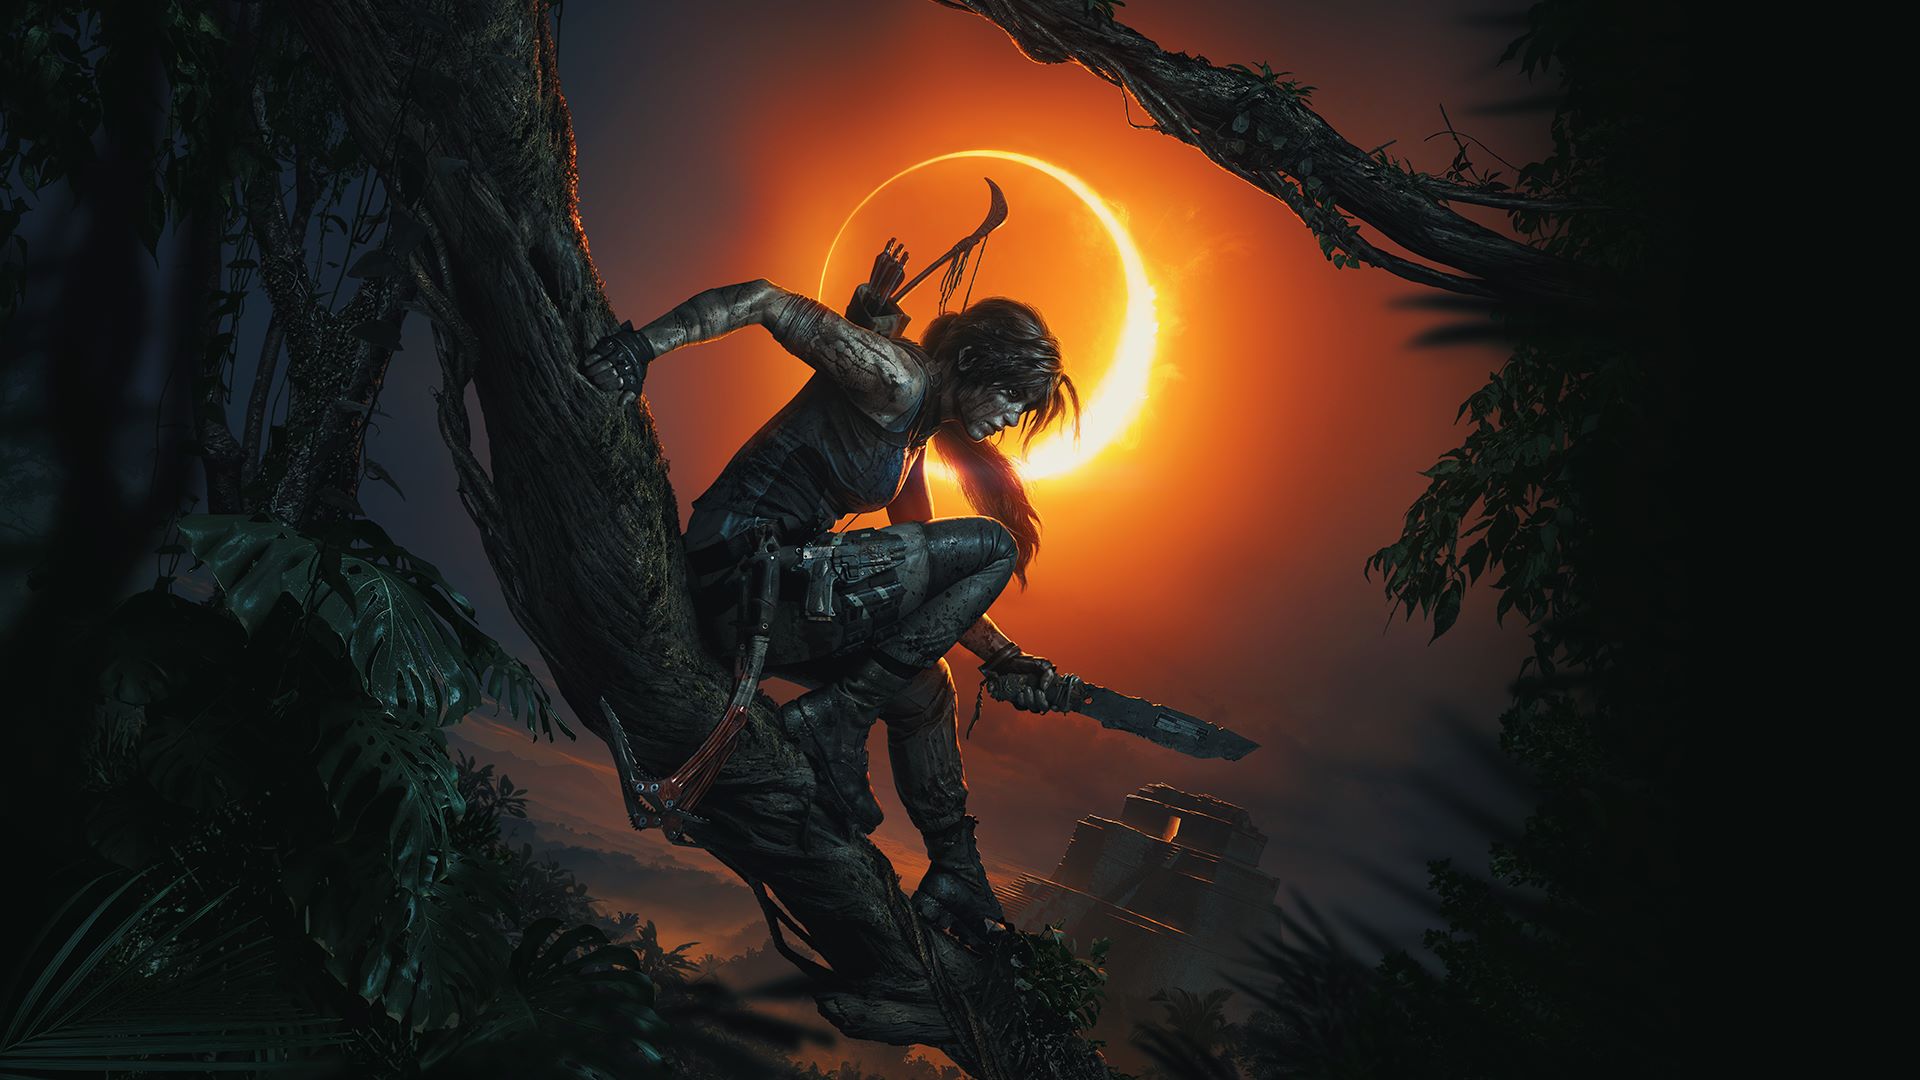 ยังไม่จบ Tomb Raider ภาคใหม่กำลังจะมา!!!